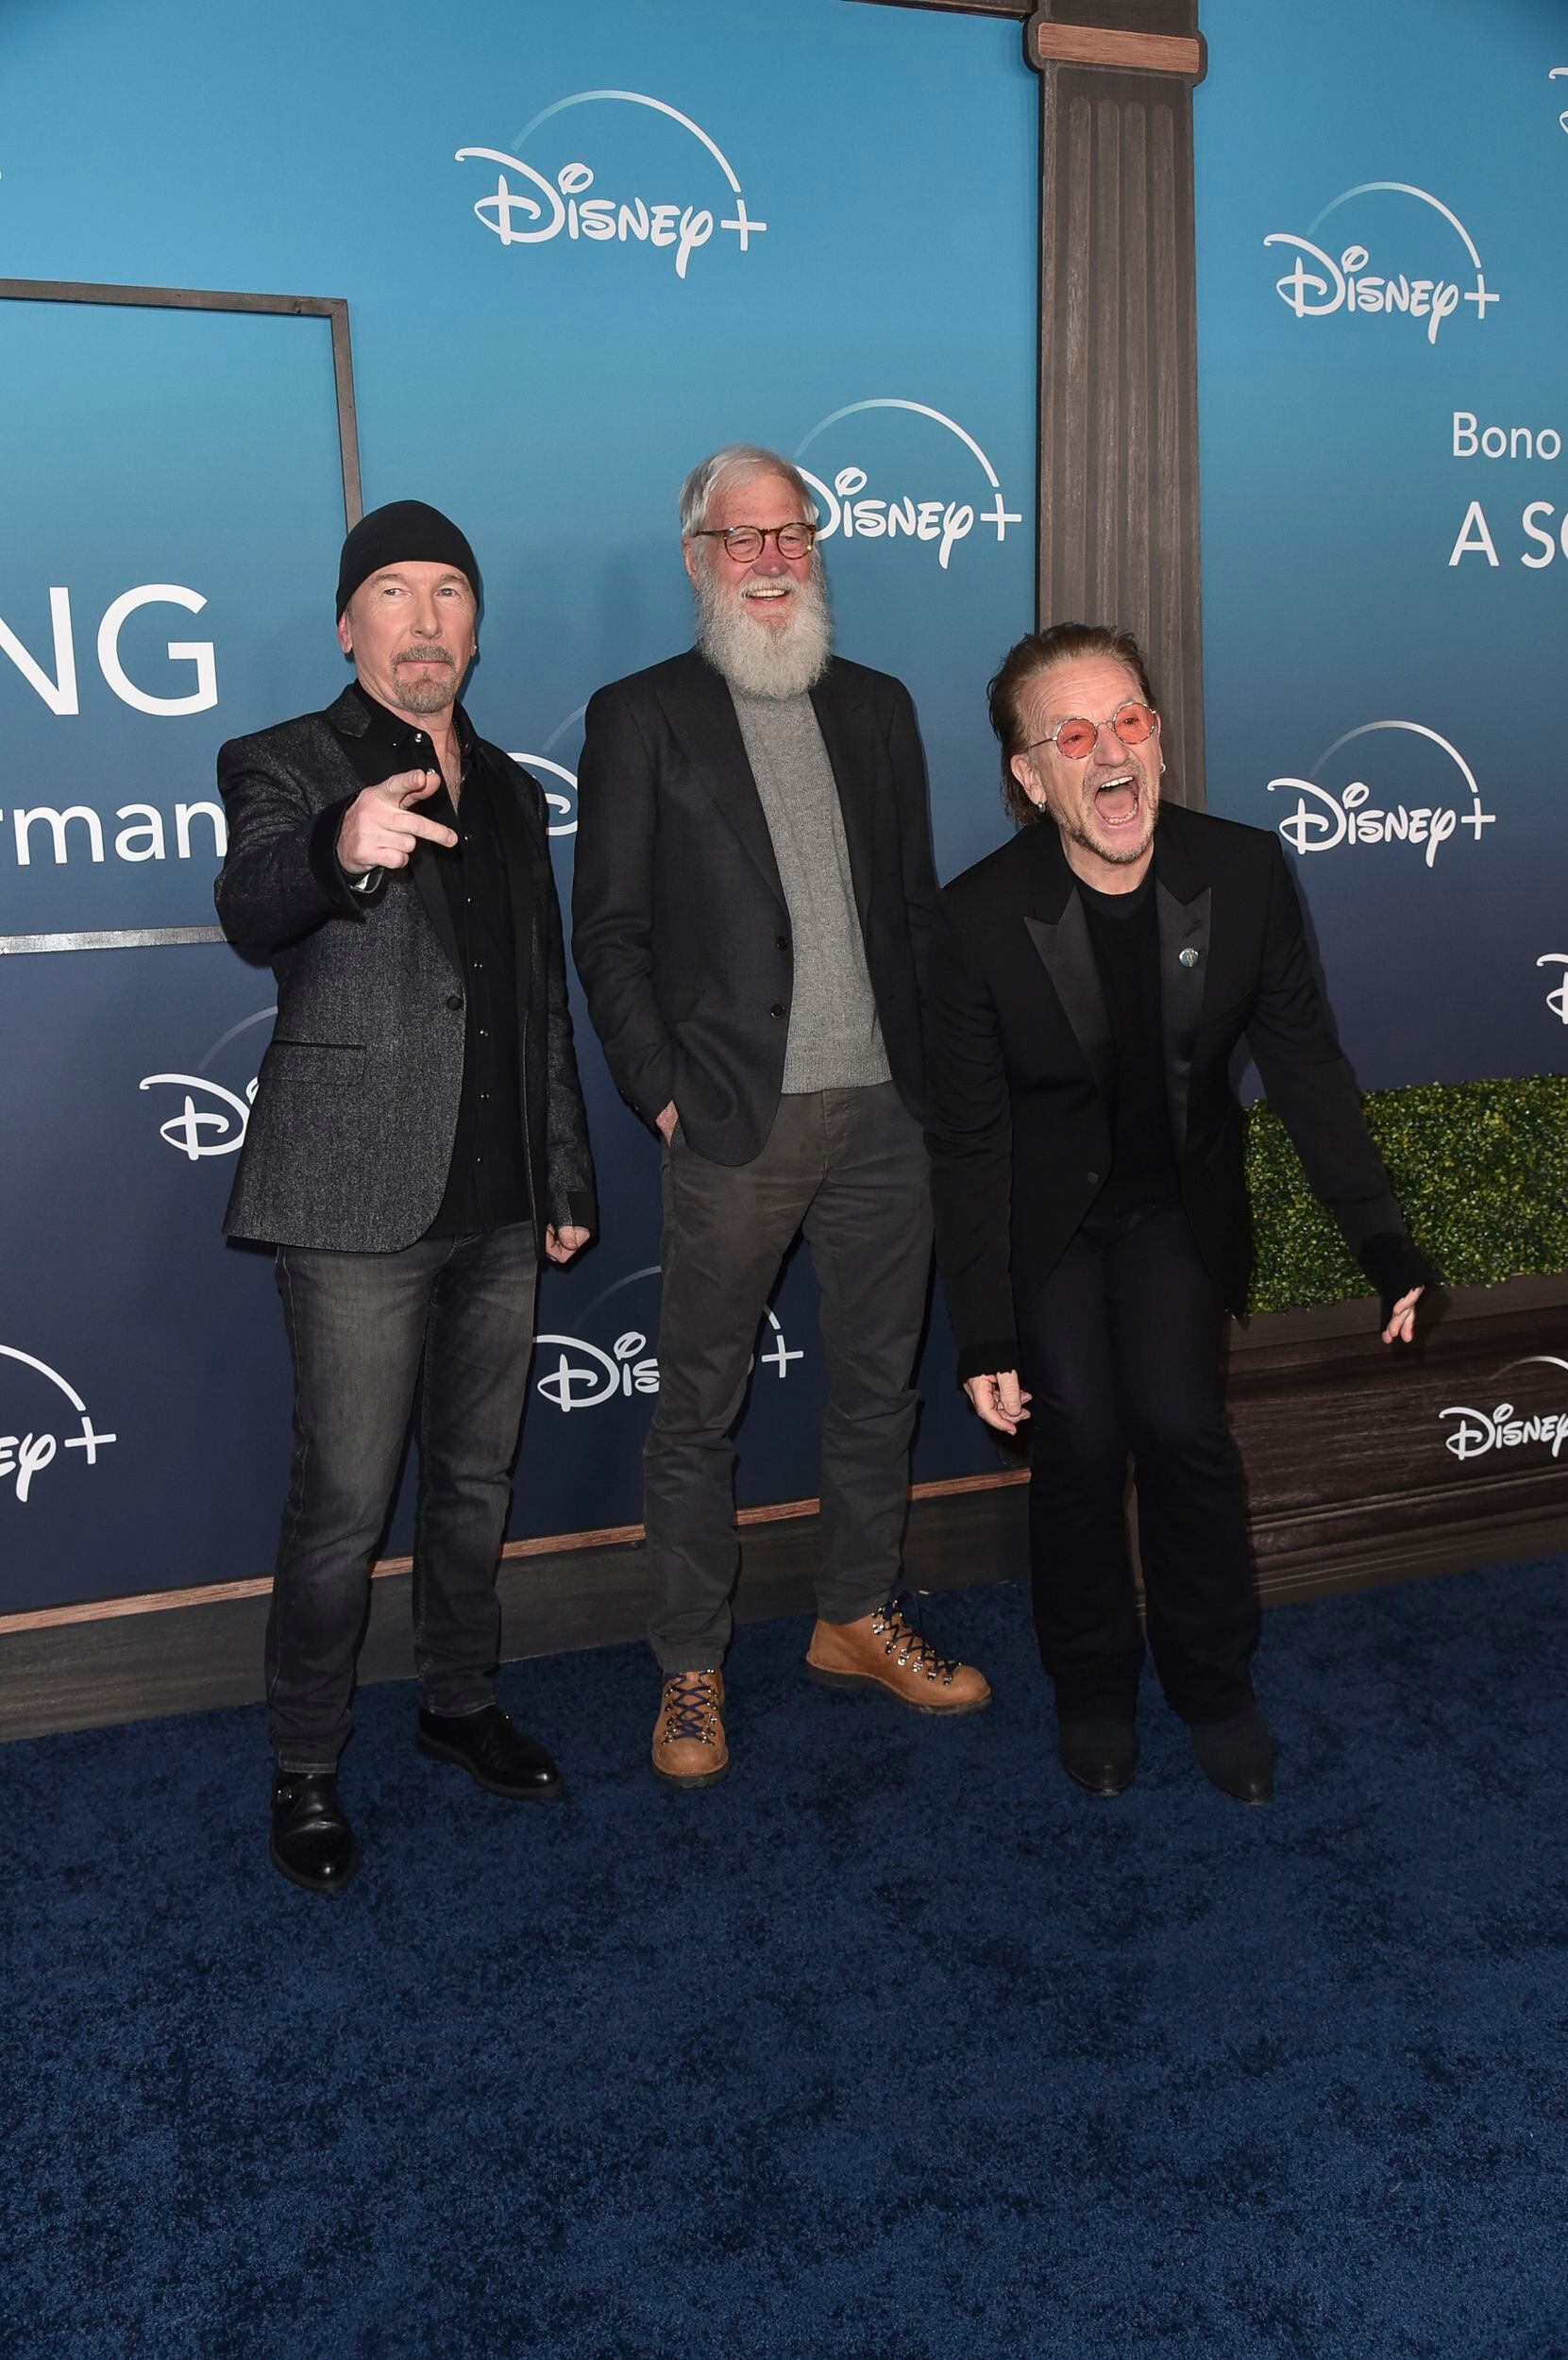 The Edge, de izquierda a derecha, David Letterman y Bono llegan al estreno de "Bono & The Edge: A Sort of Homecoming, With Dave Letterman" el miércoles 8 de marzo de 2023, en The Orpheum Theatre en Los Angeles. (Foto Richard Shotwell/Invision/AP)